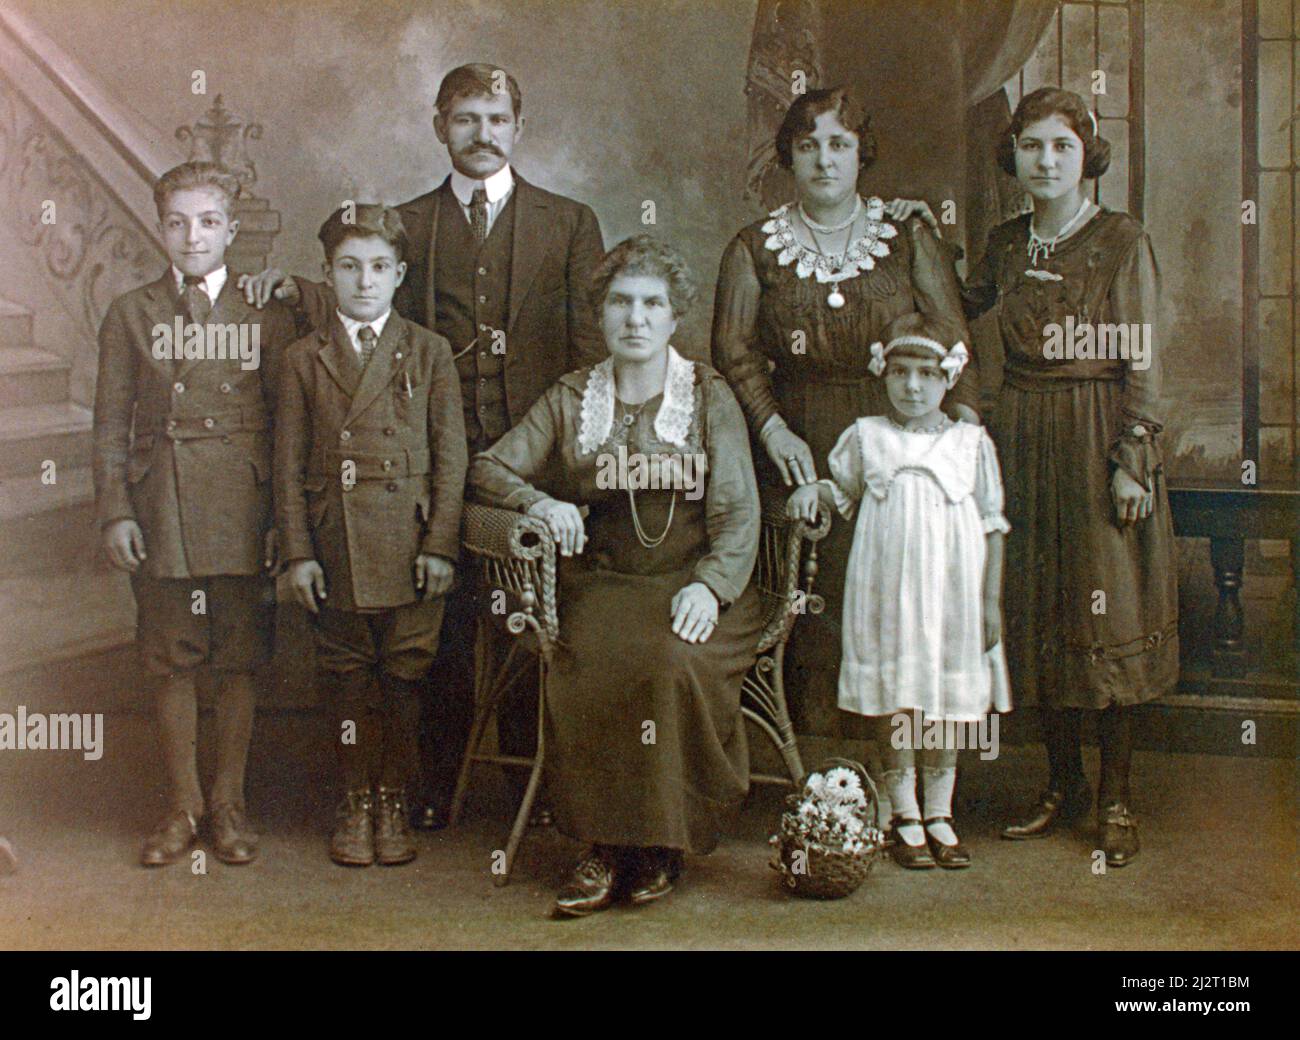 Vintage studo photo of an Armenian family. Taken circa 1917. Stock Photo